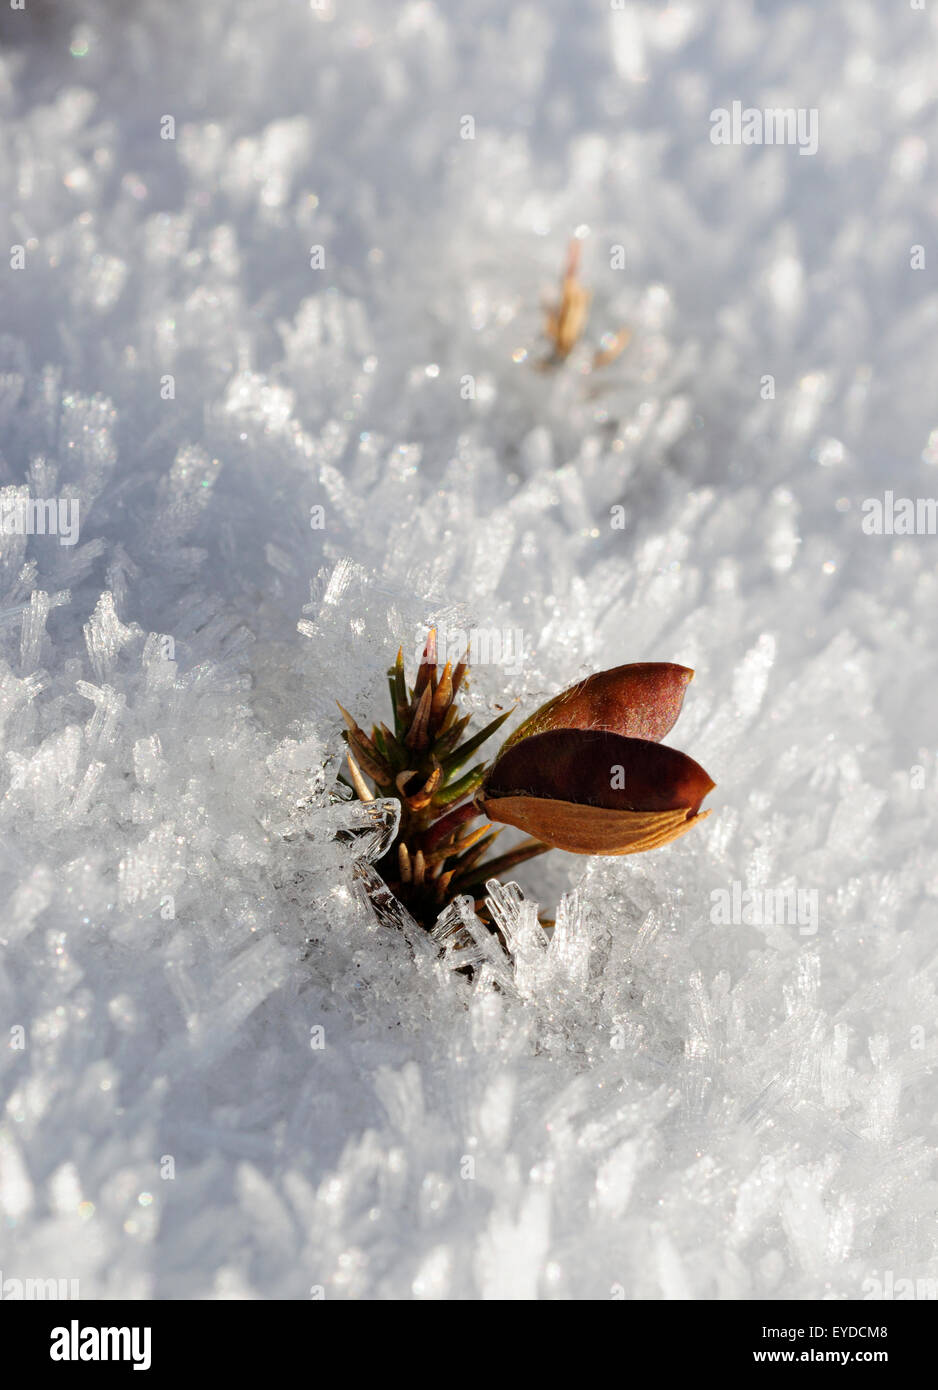 L'ajonc commun (Ulex europaeus) la germination dans la neige Banque D'Images